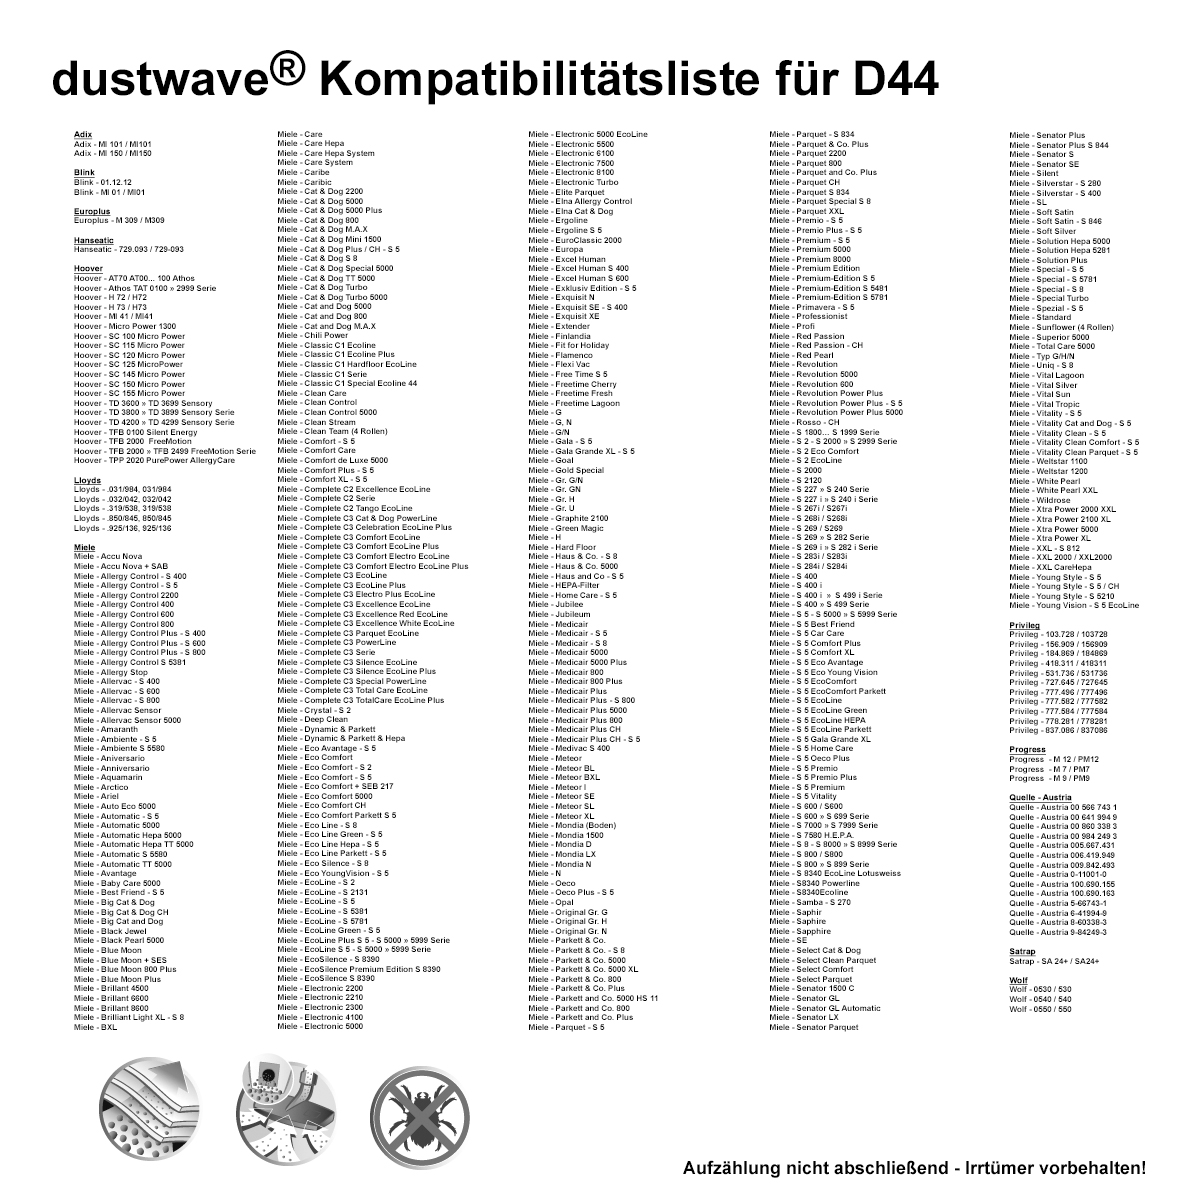 Dustwave® 5 Staubsaugerbeutel für Miele S406i / S 406 i - hocheffizient, mehrlagiges Mikrovlies mit Hygieneverschluss - Made in Germany